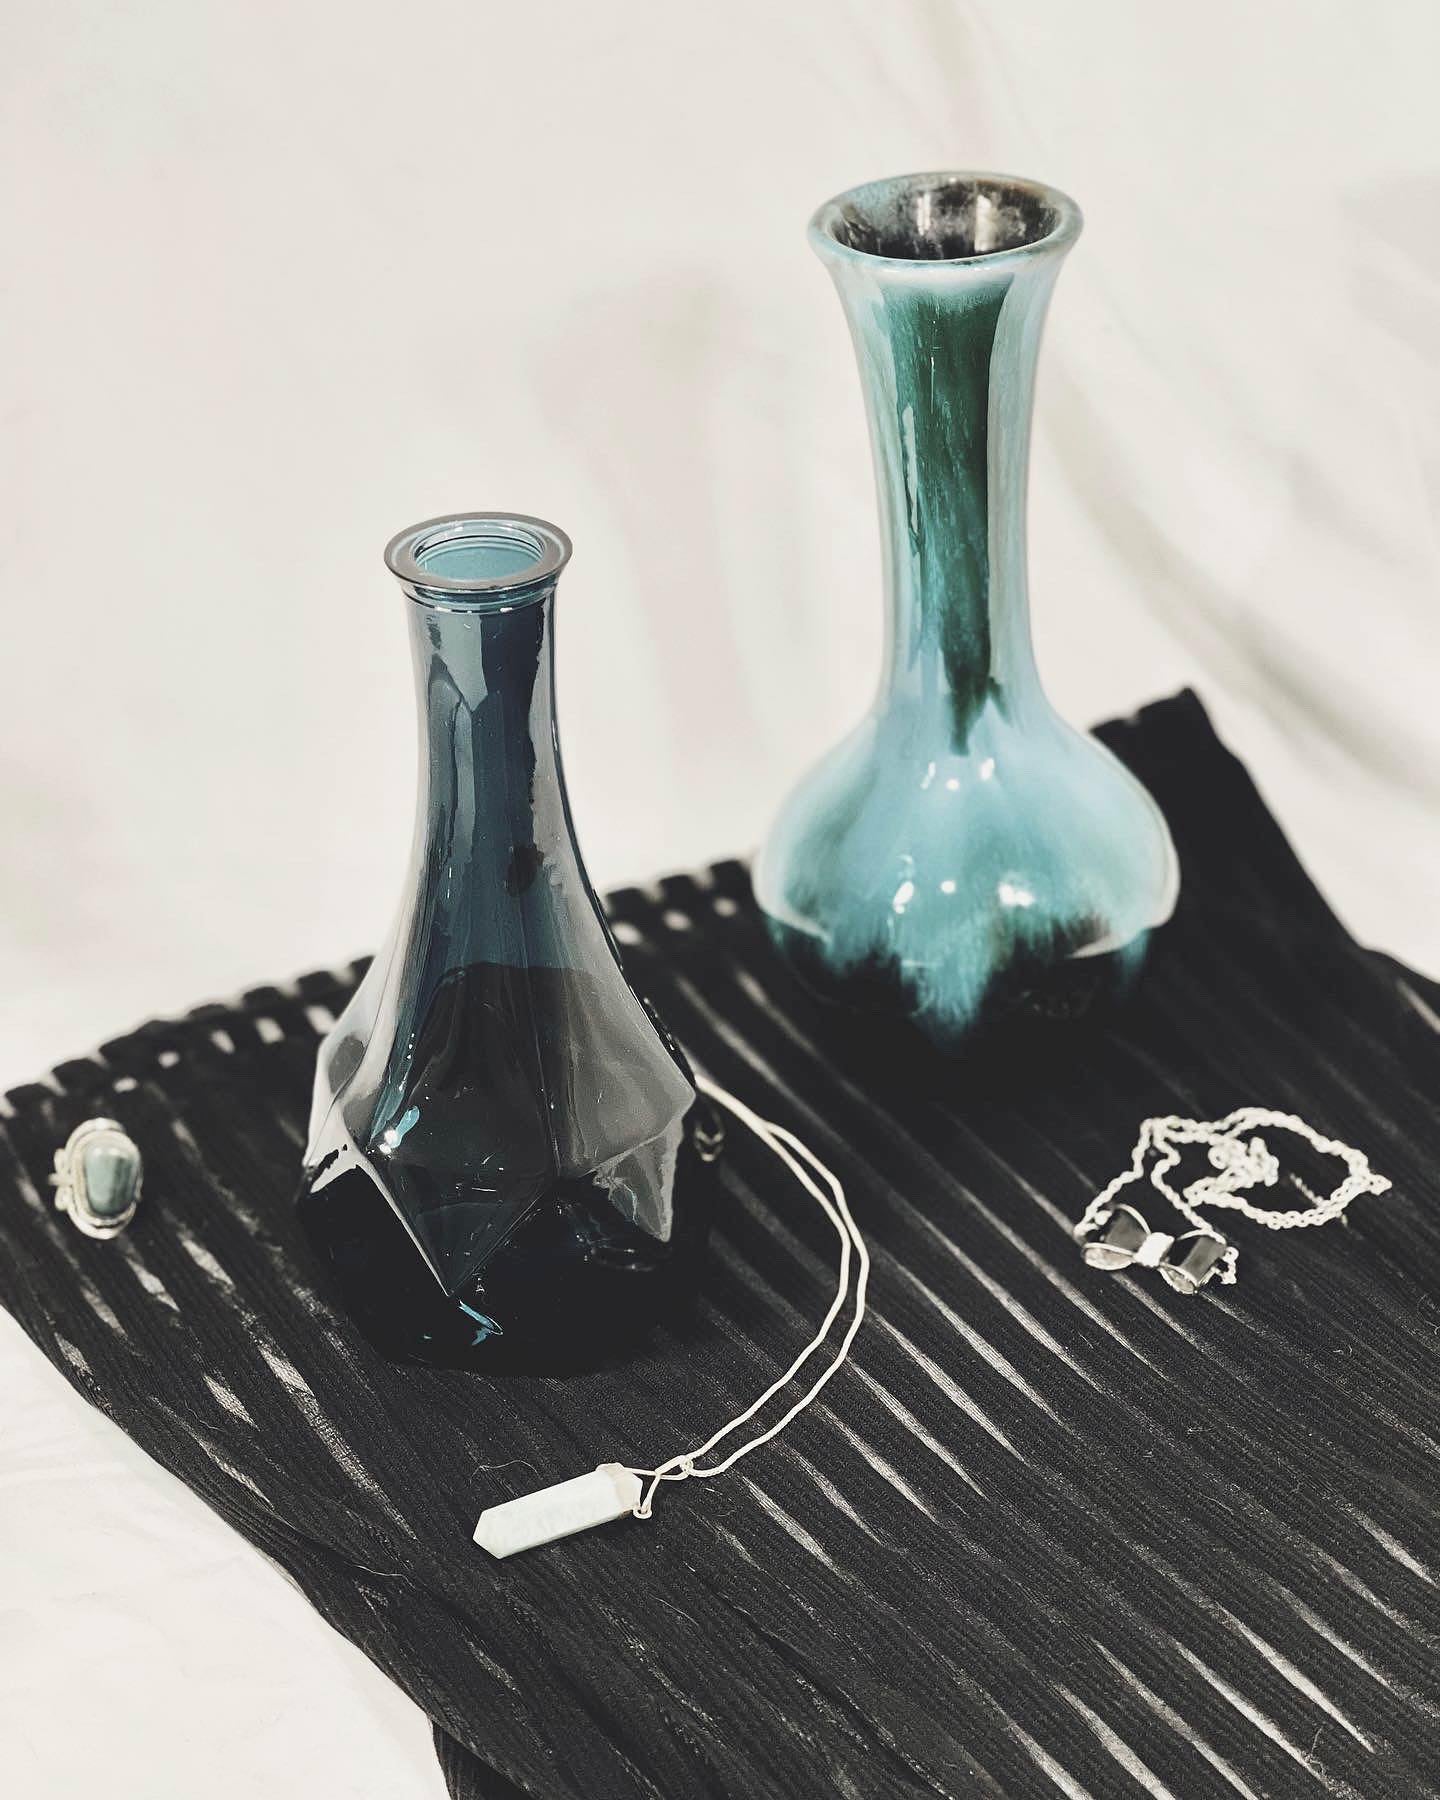 Blue Vases